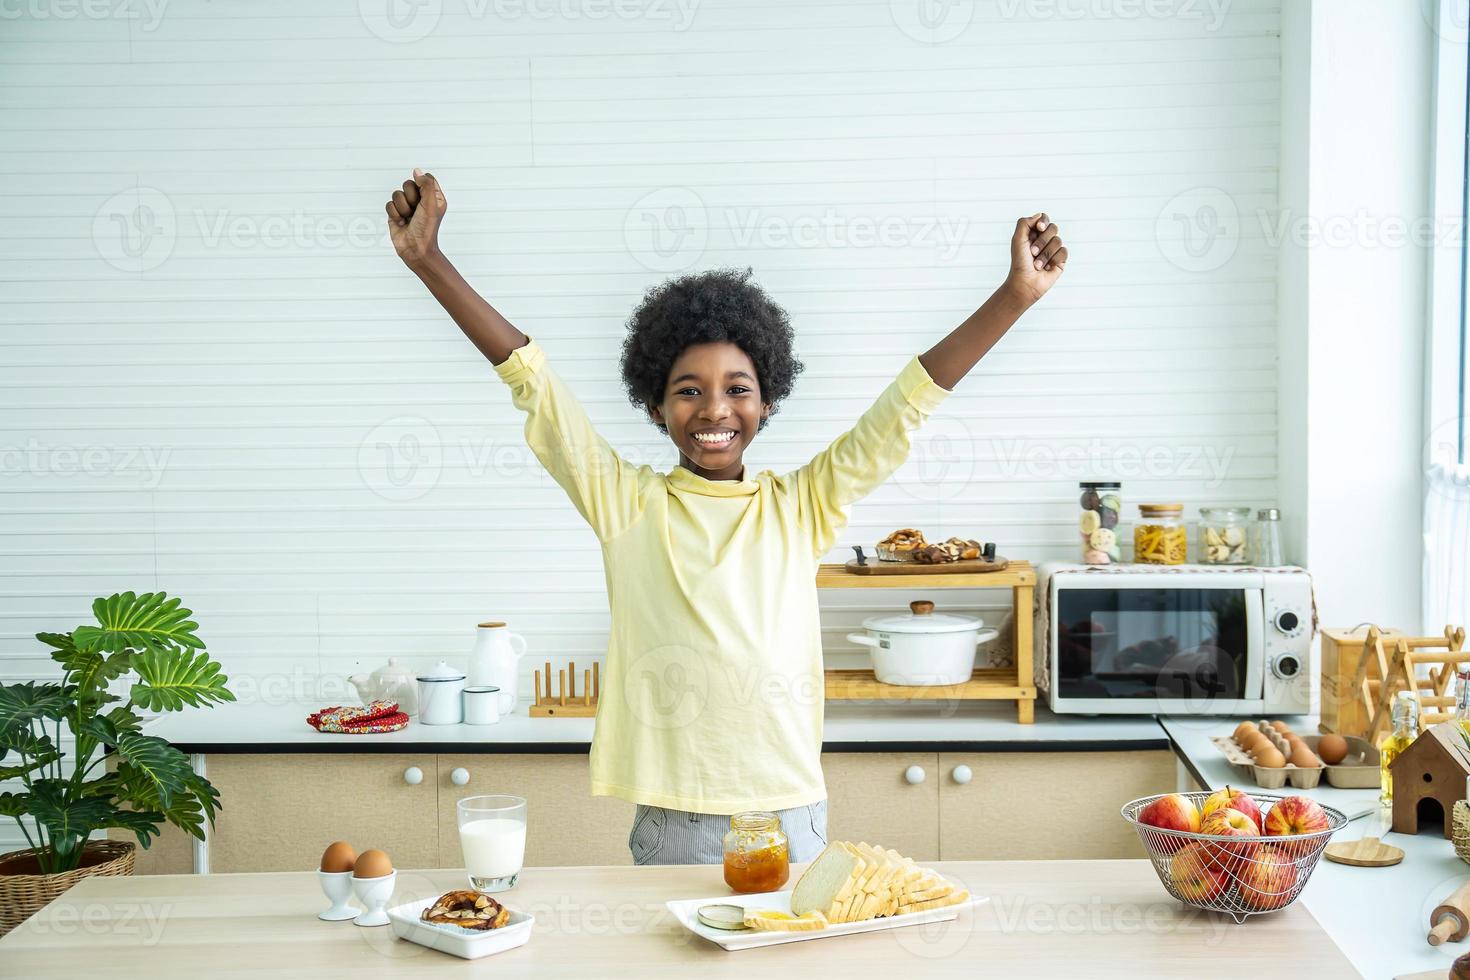 adorável menino bonitinho feliz levantando as mãos, garoto desfrutando de sua deliciosa refeição de café da manhã na cozinha em casa pela manhã foto